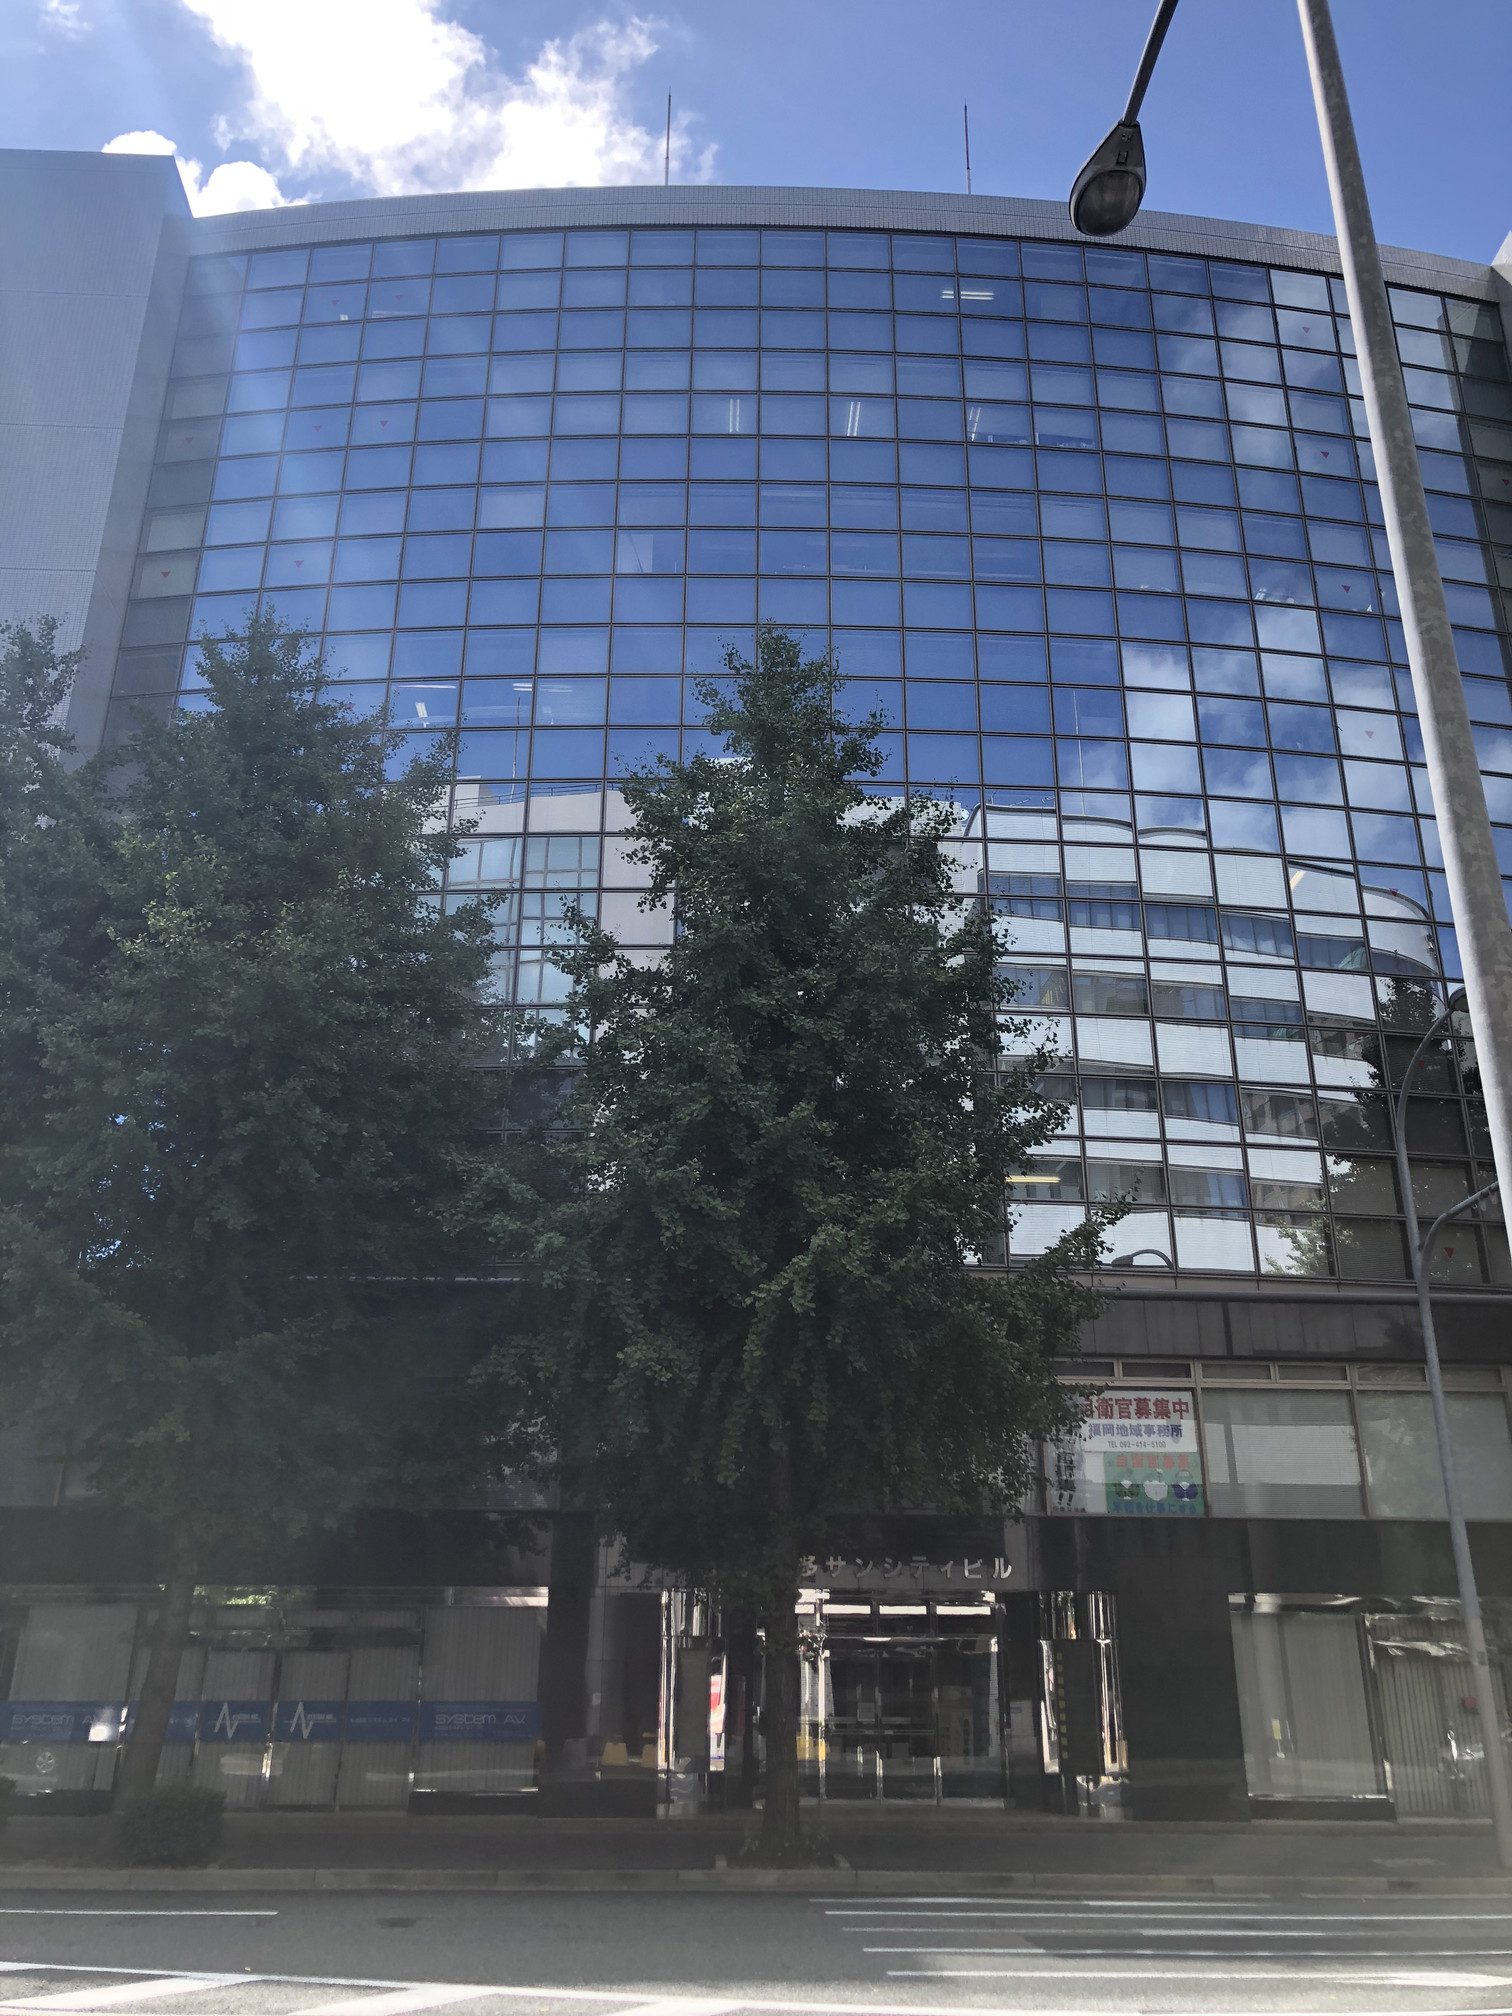 戸田総合法律事務所